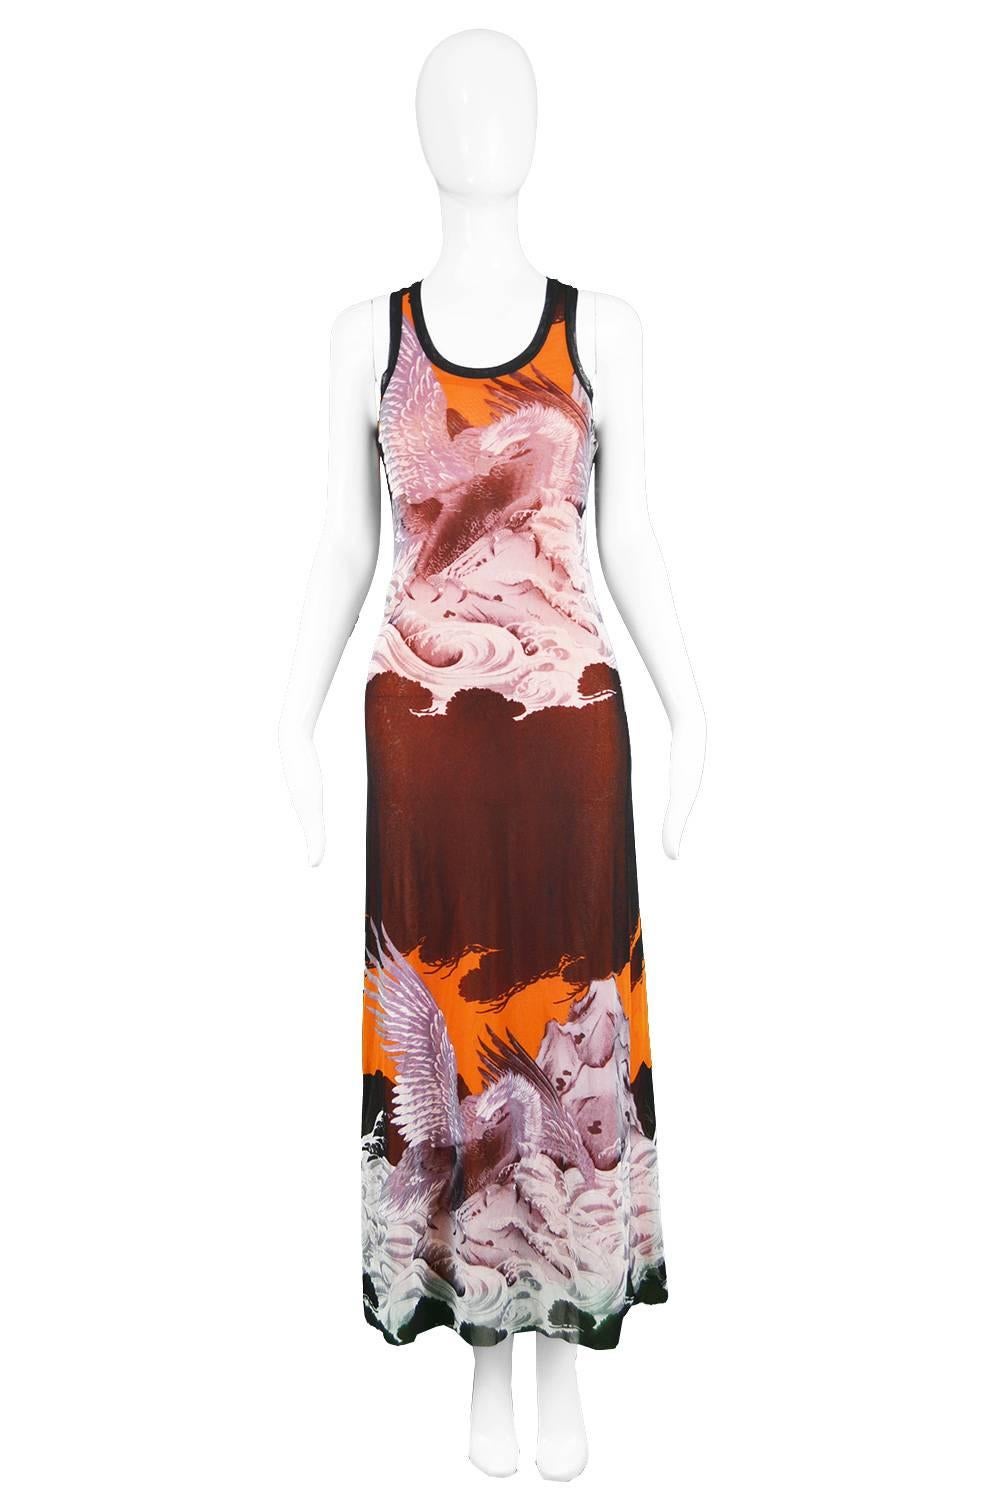 Jean Paul Gaultier Eagle Print Fuzzi Sleeveless Orange Mesh Maxi Dress

Estimated Size: UK 8-10/ US 4-6/ EU 36-38. Please check measurements.
Bust - 32” / 81cm
Waist - 26” / 66cm
Hips - 36” / 91cm
Length (Shoulder to Hem) - 54” / 137cm
Note: Item is